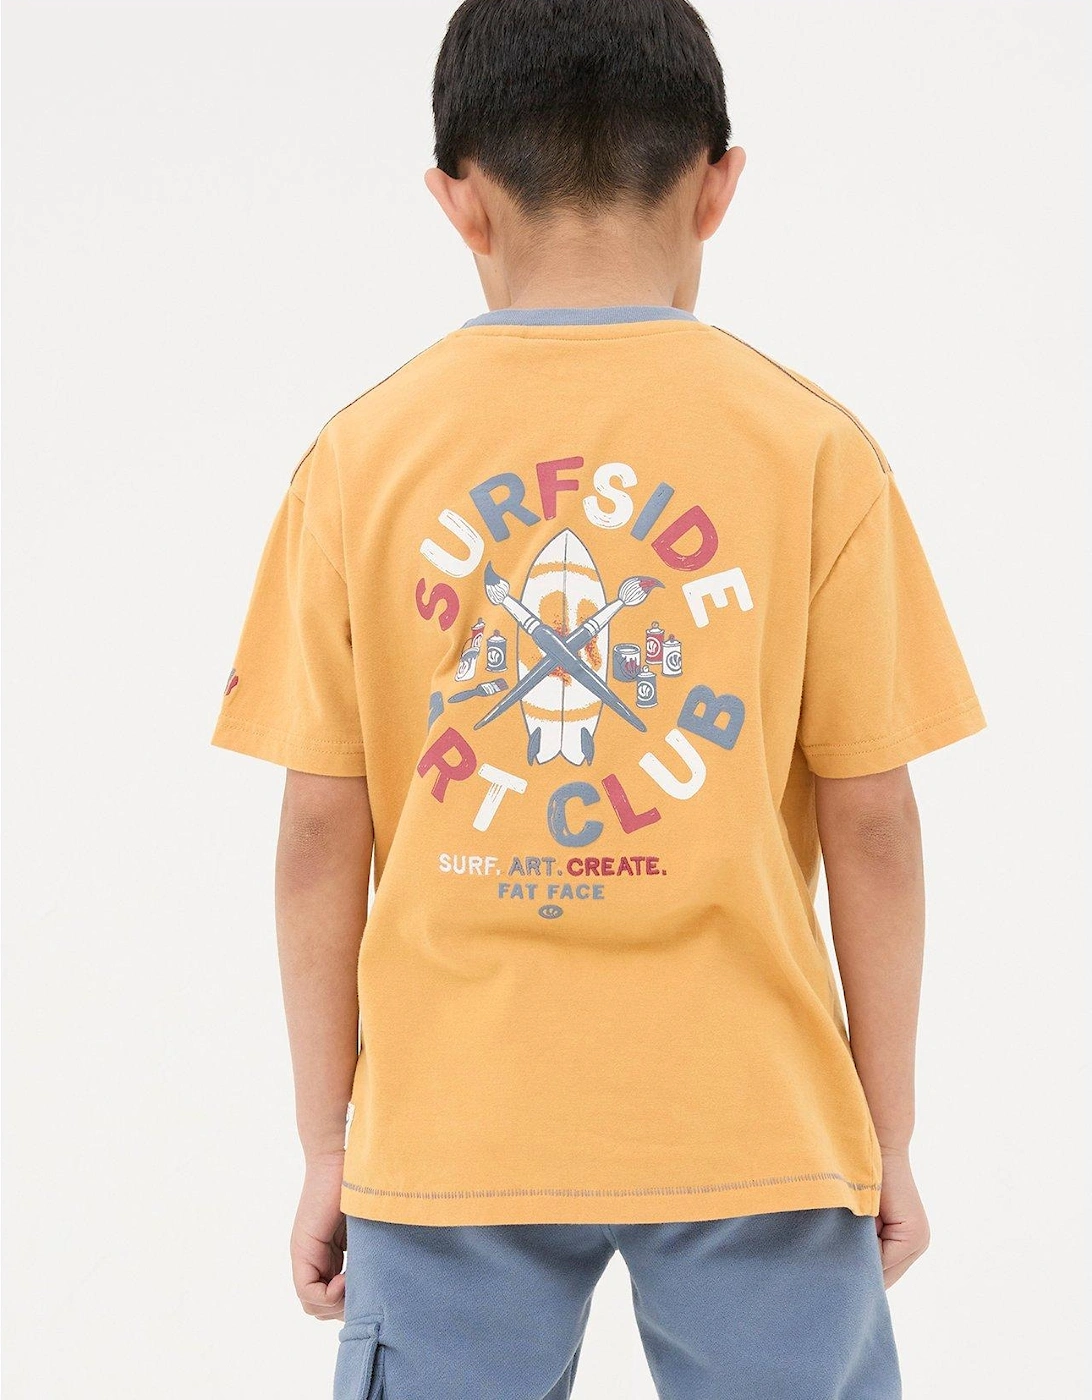 Boys Art Graphic Short Sleeve T Shirt - Golden Yellow